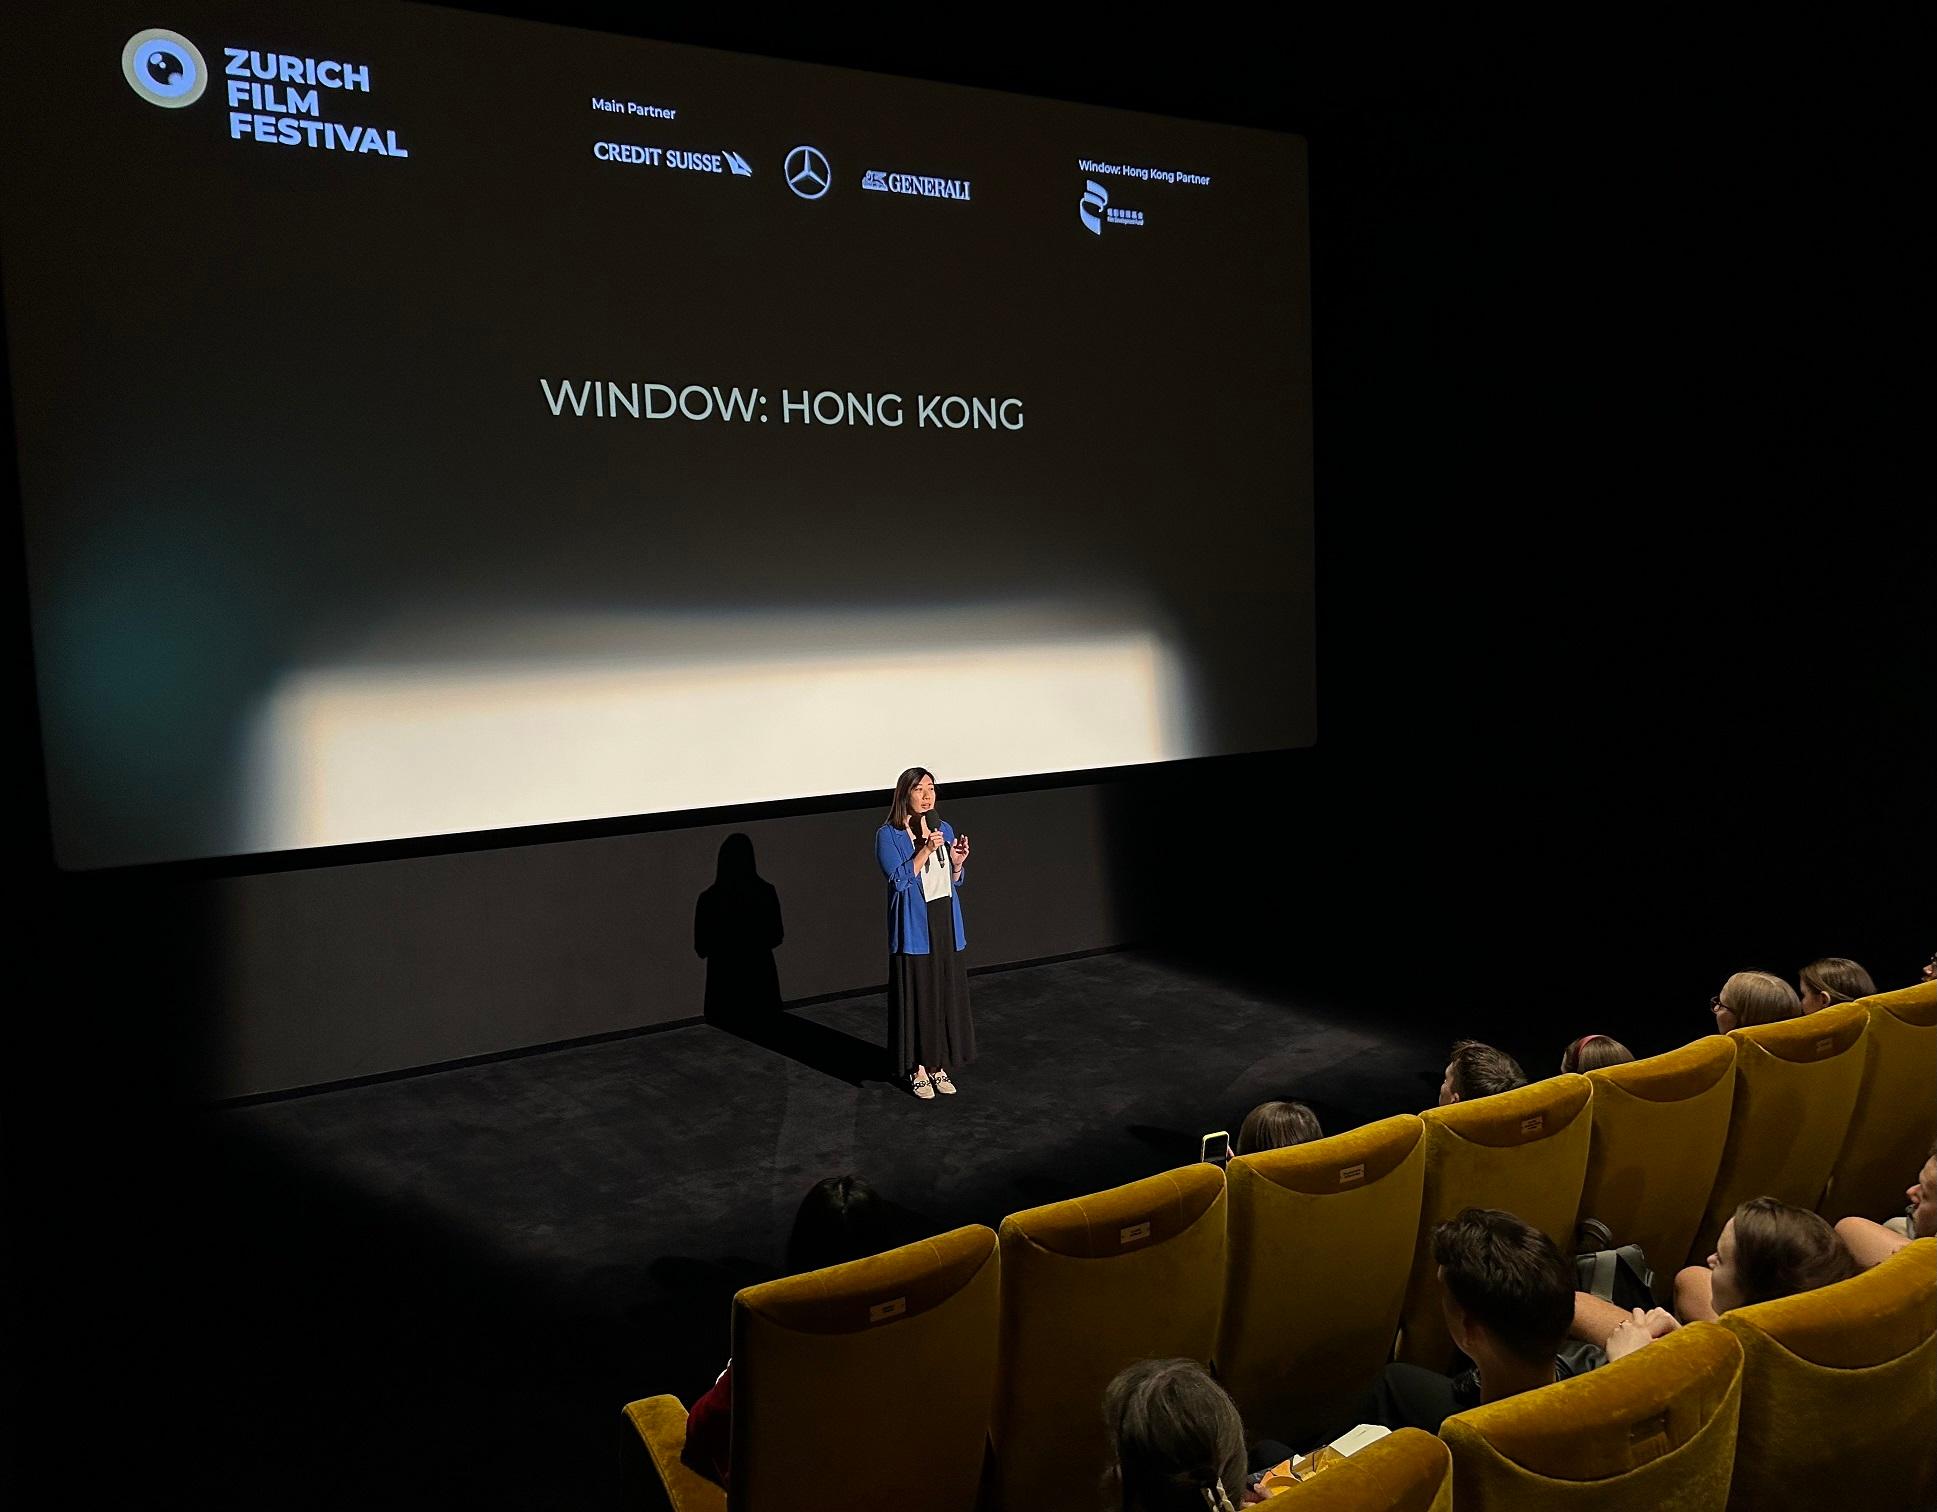 駐柏林經貿辦處長司徒加敏九月二十九日參與在瑞士舉行的蘇黎世電影節。